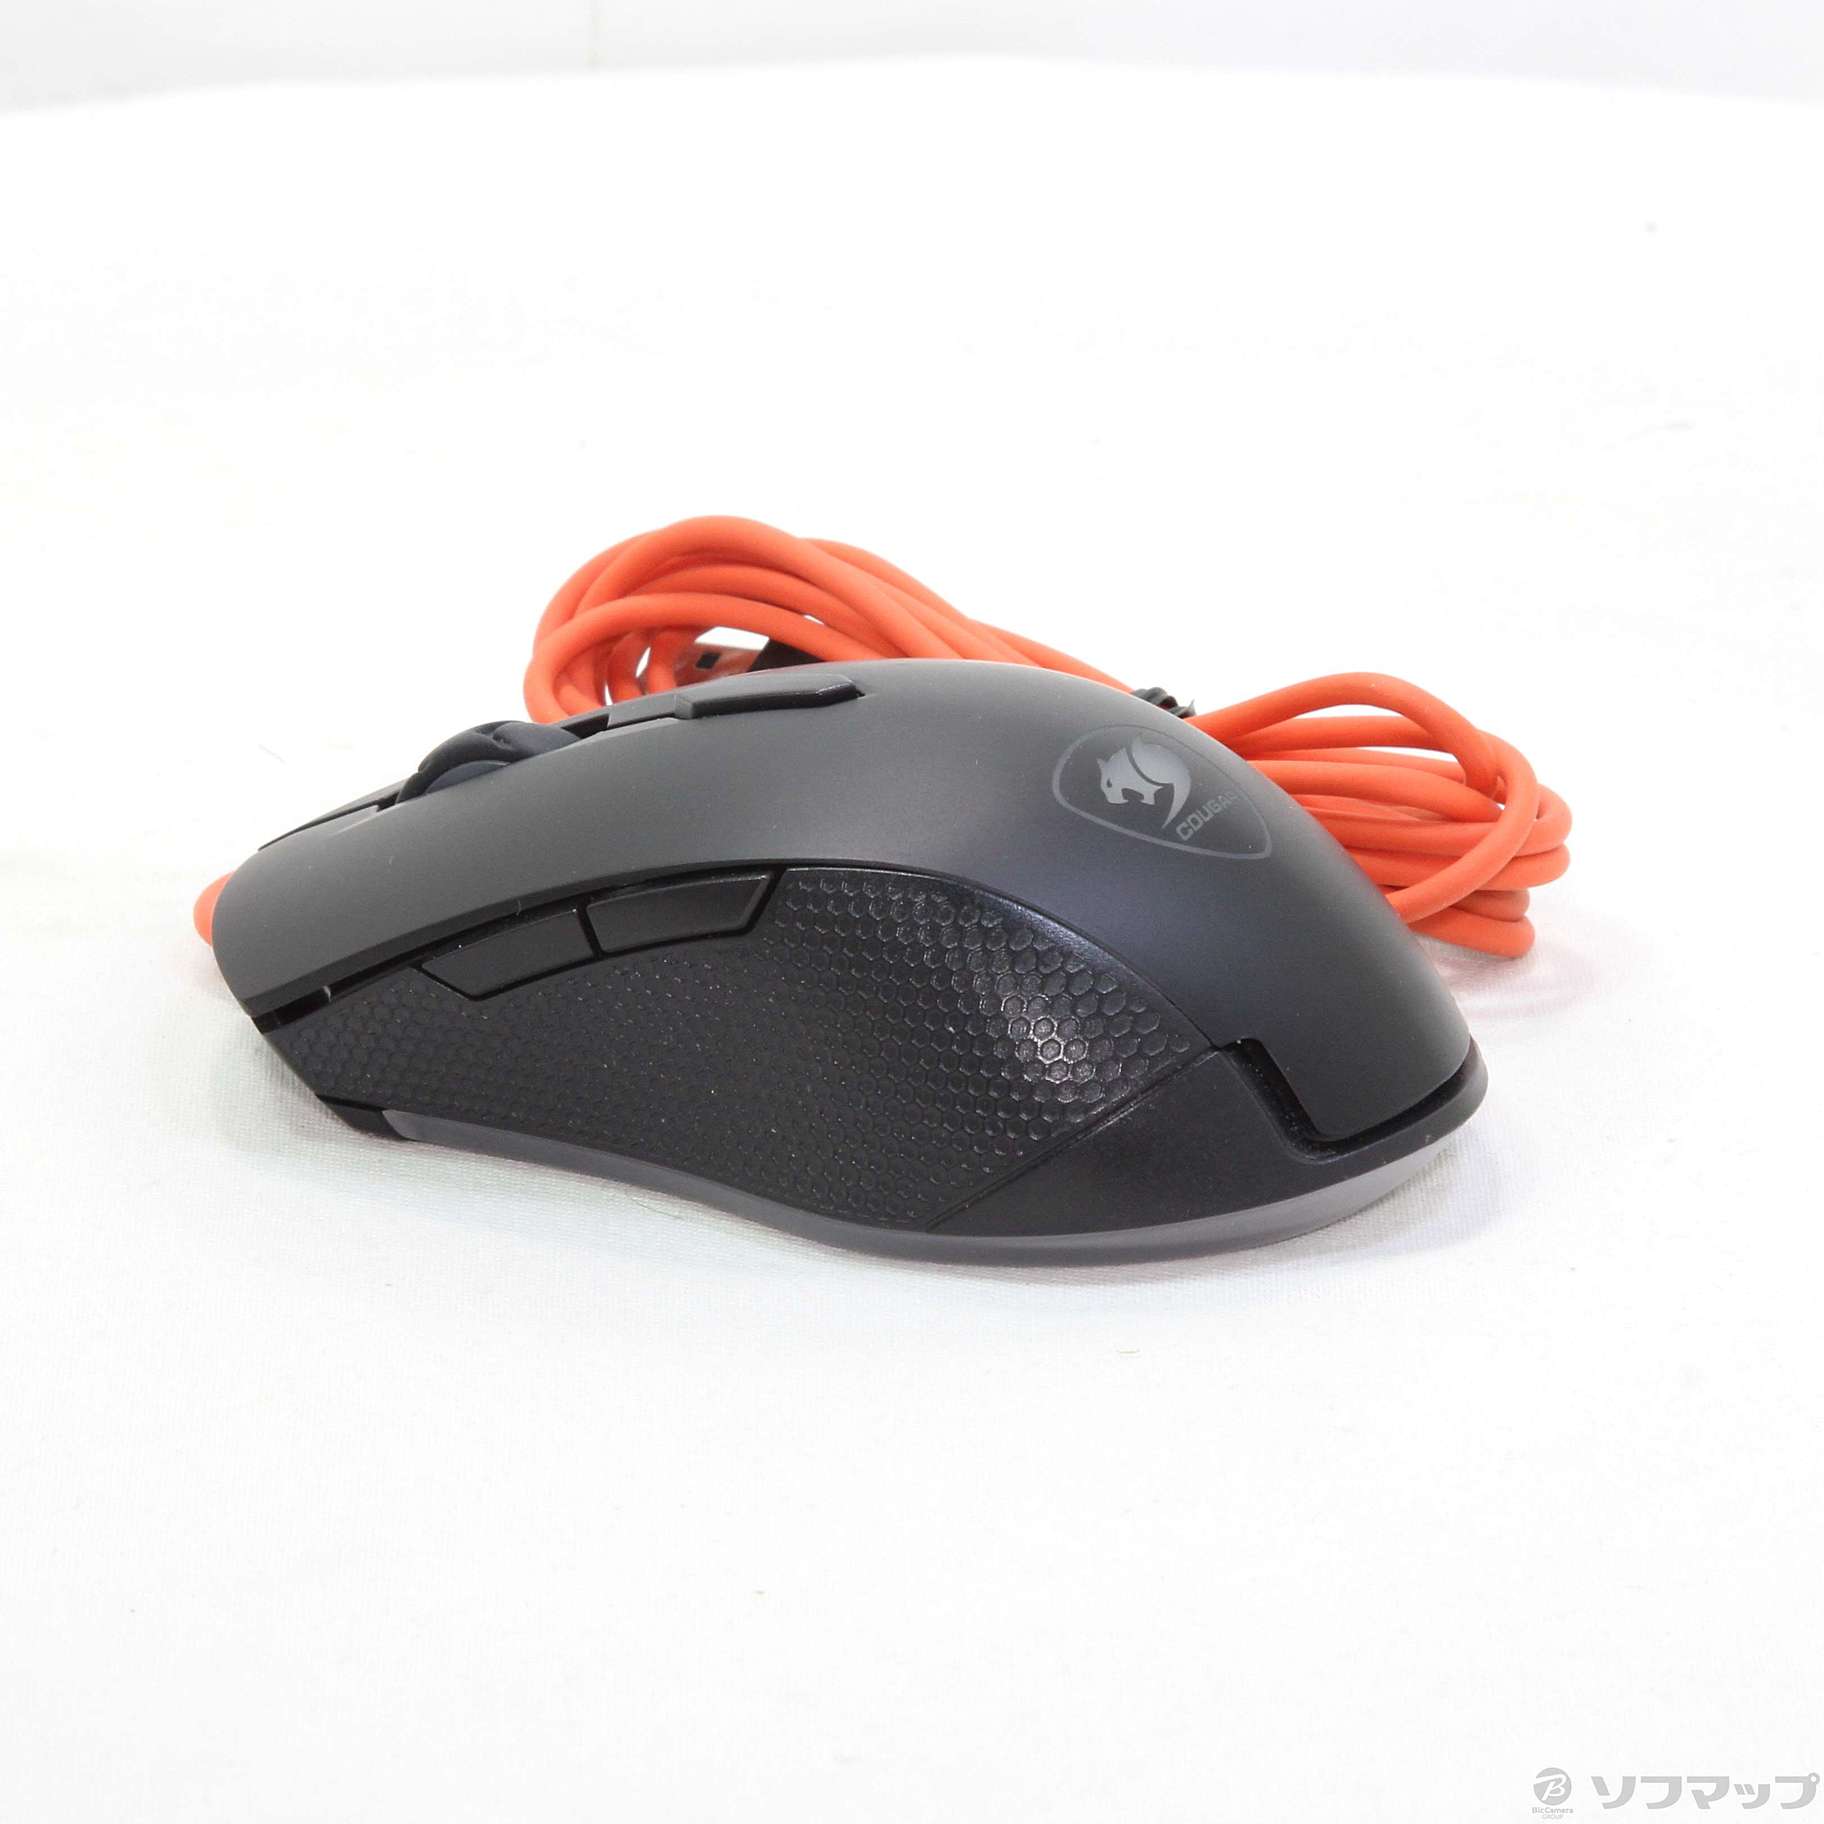 【中古】COUGAR(クーガー) 〔展示品〕 Minos X2 Gaming Mouse【291-ud】 3